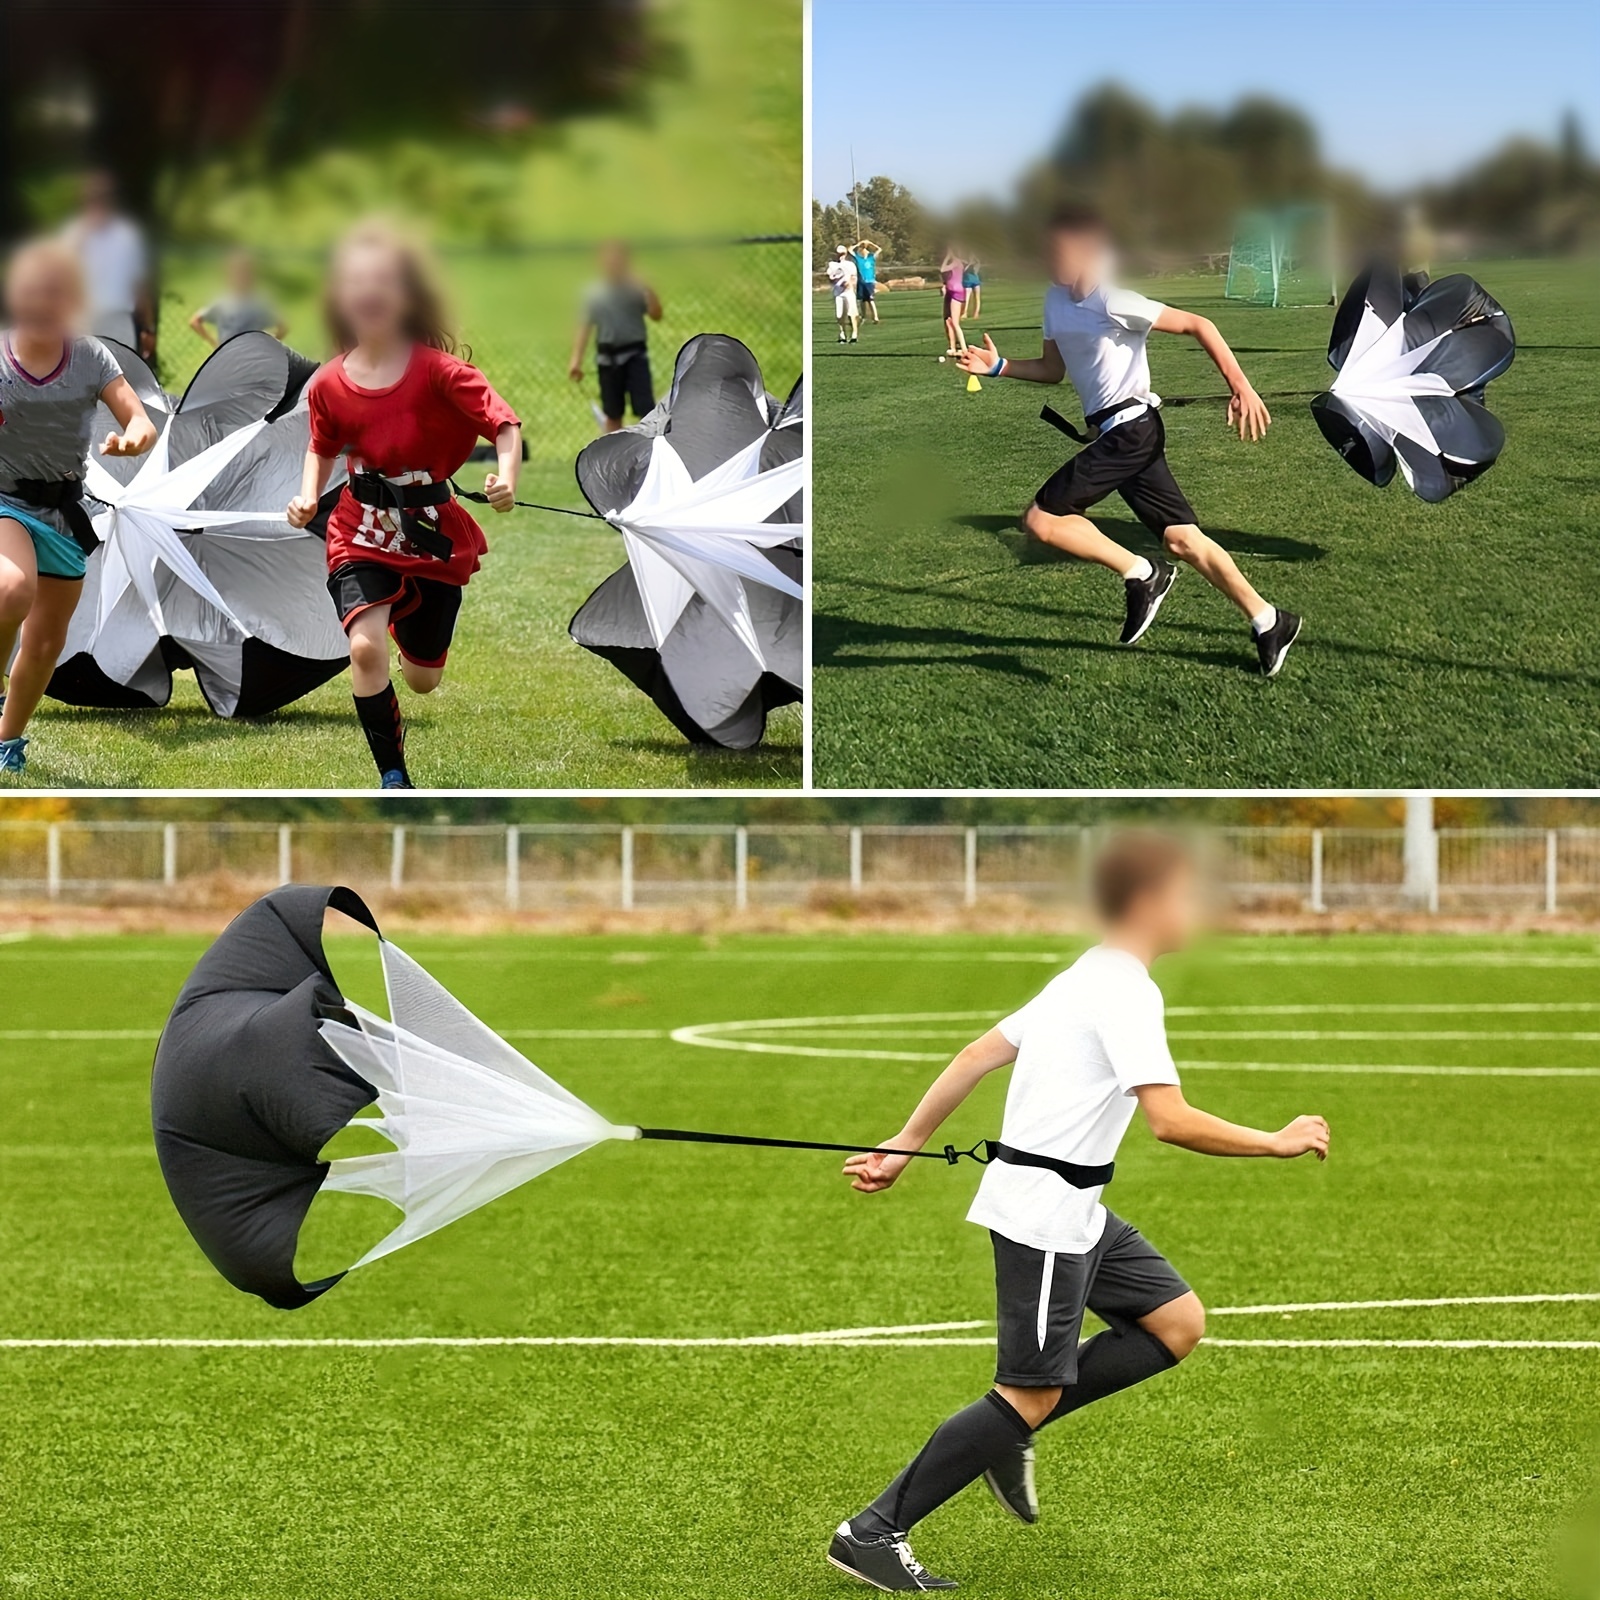 BULLETSHAKER Running Speed Training Football Parachute - 48 Inch